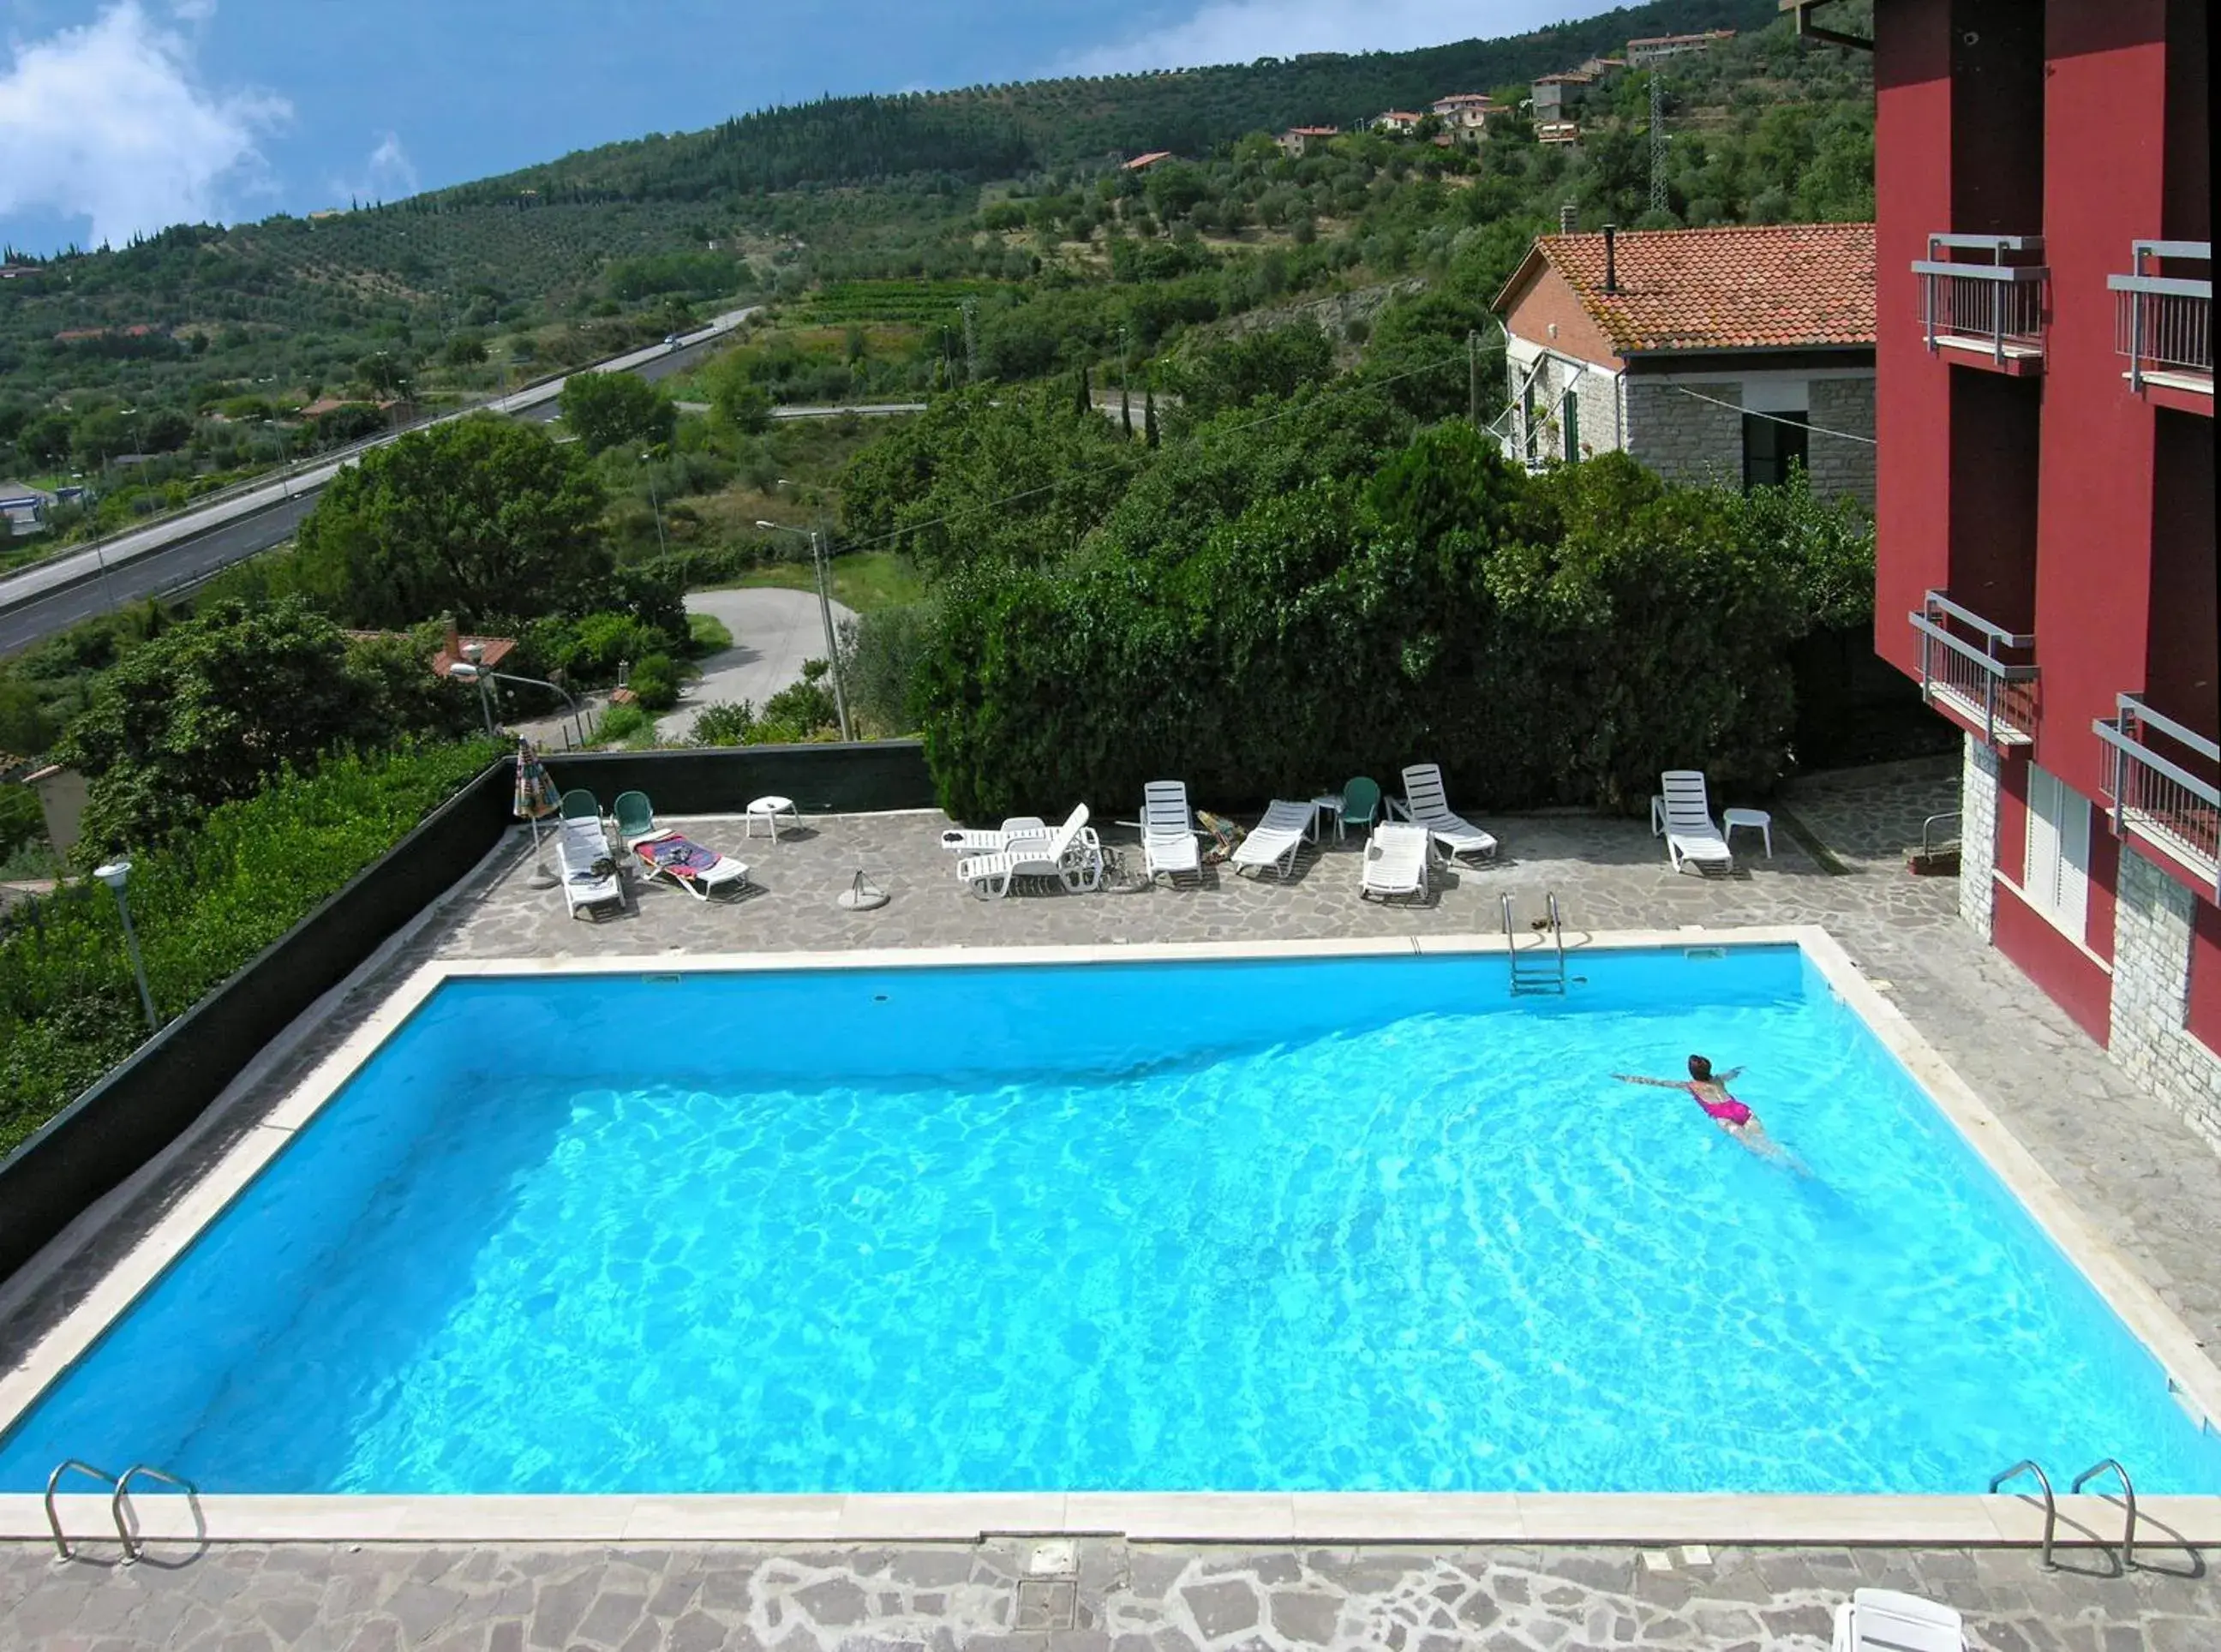 Pool View in Hotel Cavalieri